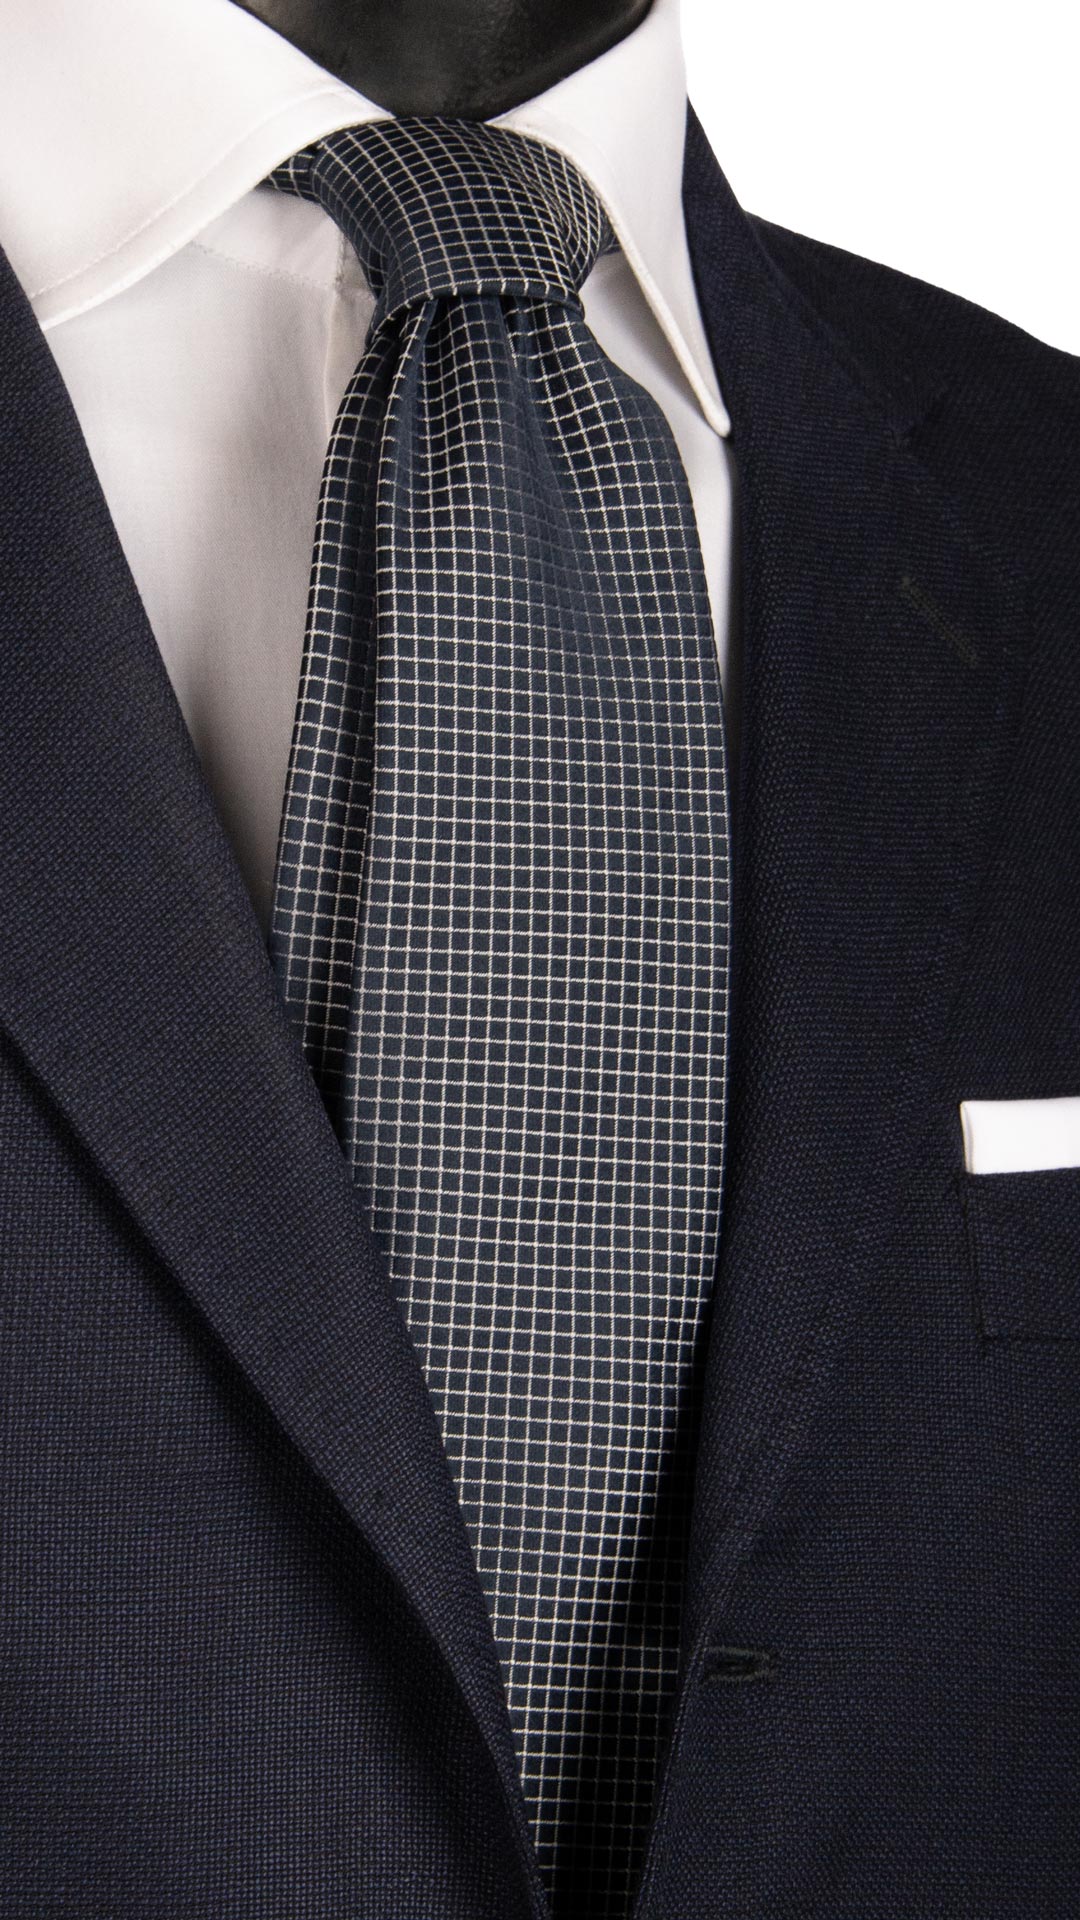 Cravatta da Cerimonia di Seta Blu a Quadri Grigio Argento CY6663 Made in Italy Graffeo Cravatte